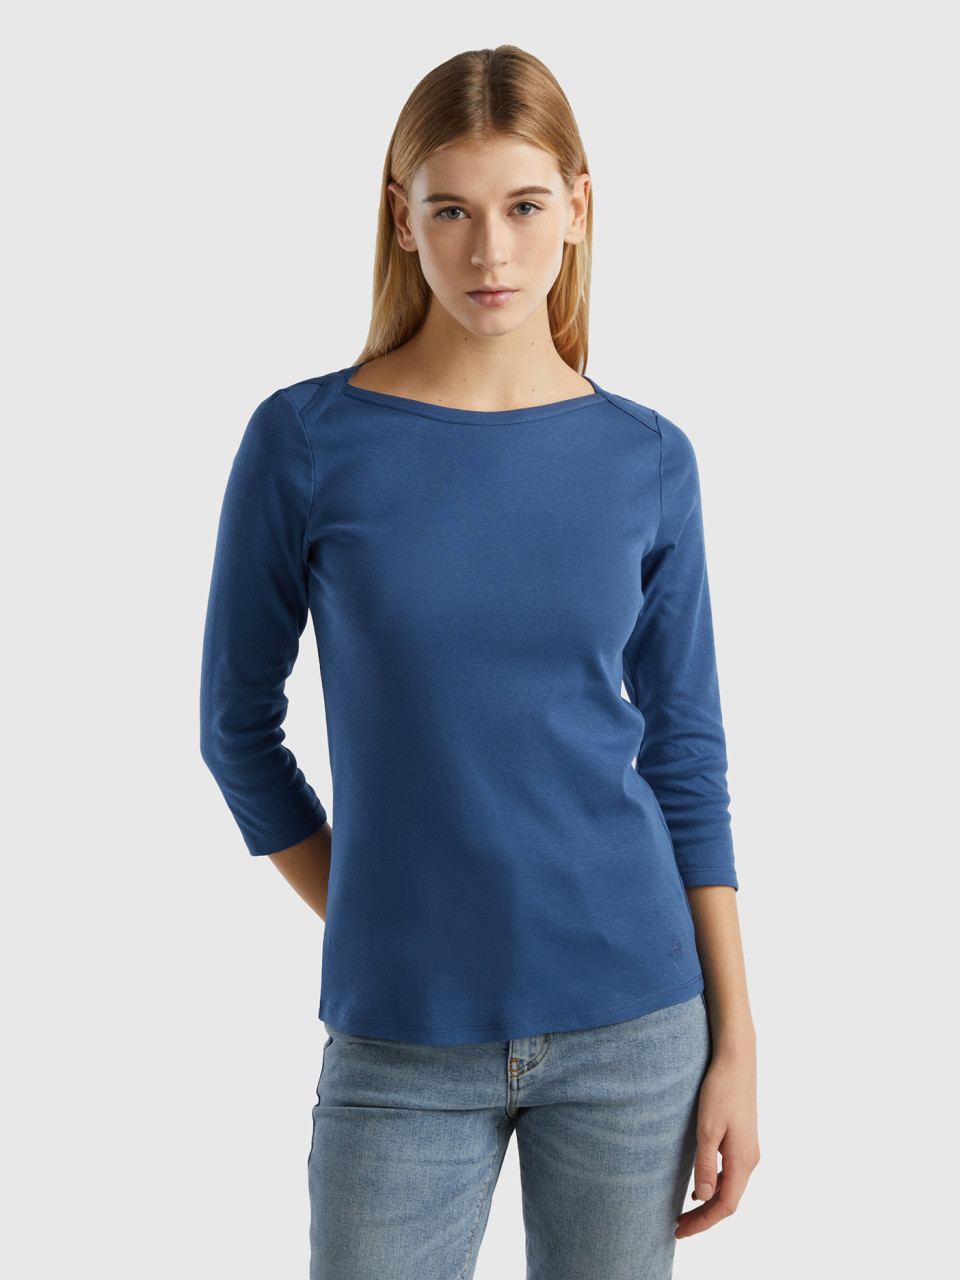 Benetton, Camiseta De 100 % Algodón Con Escote Barco, Azul Grisáceo, Mujer